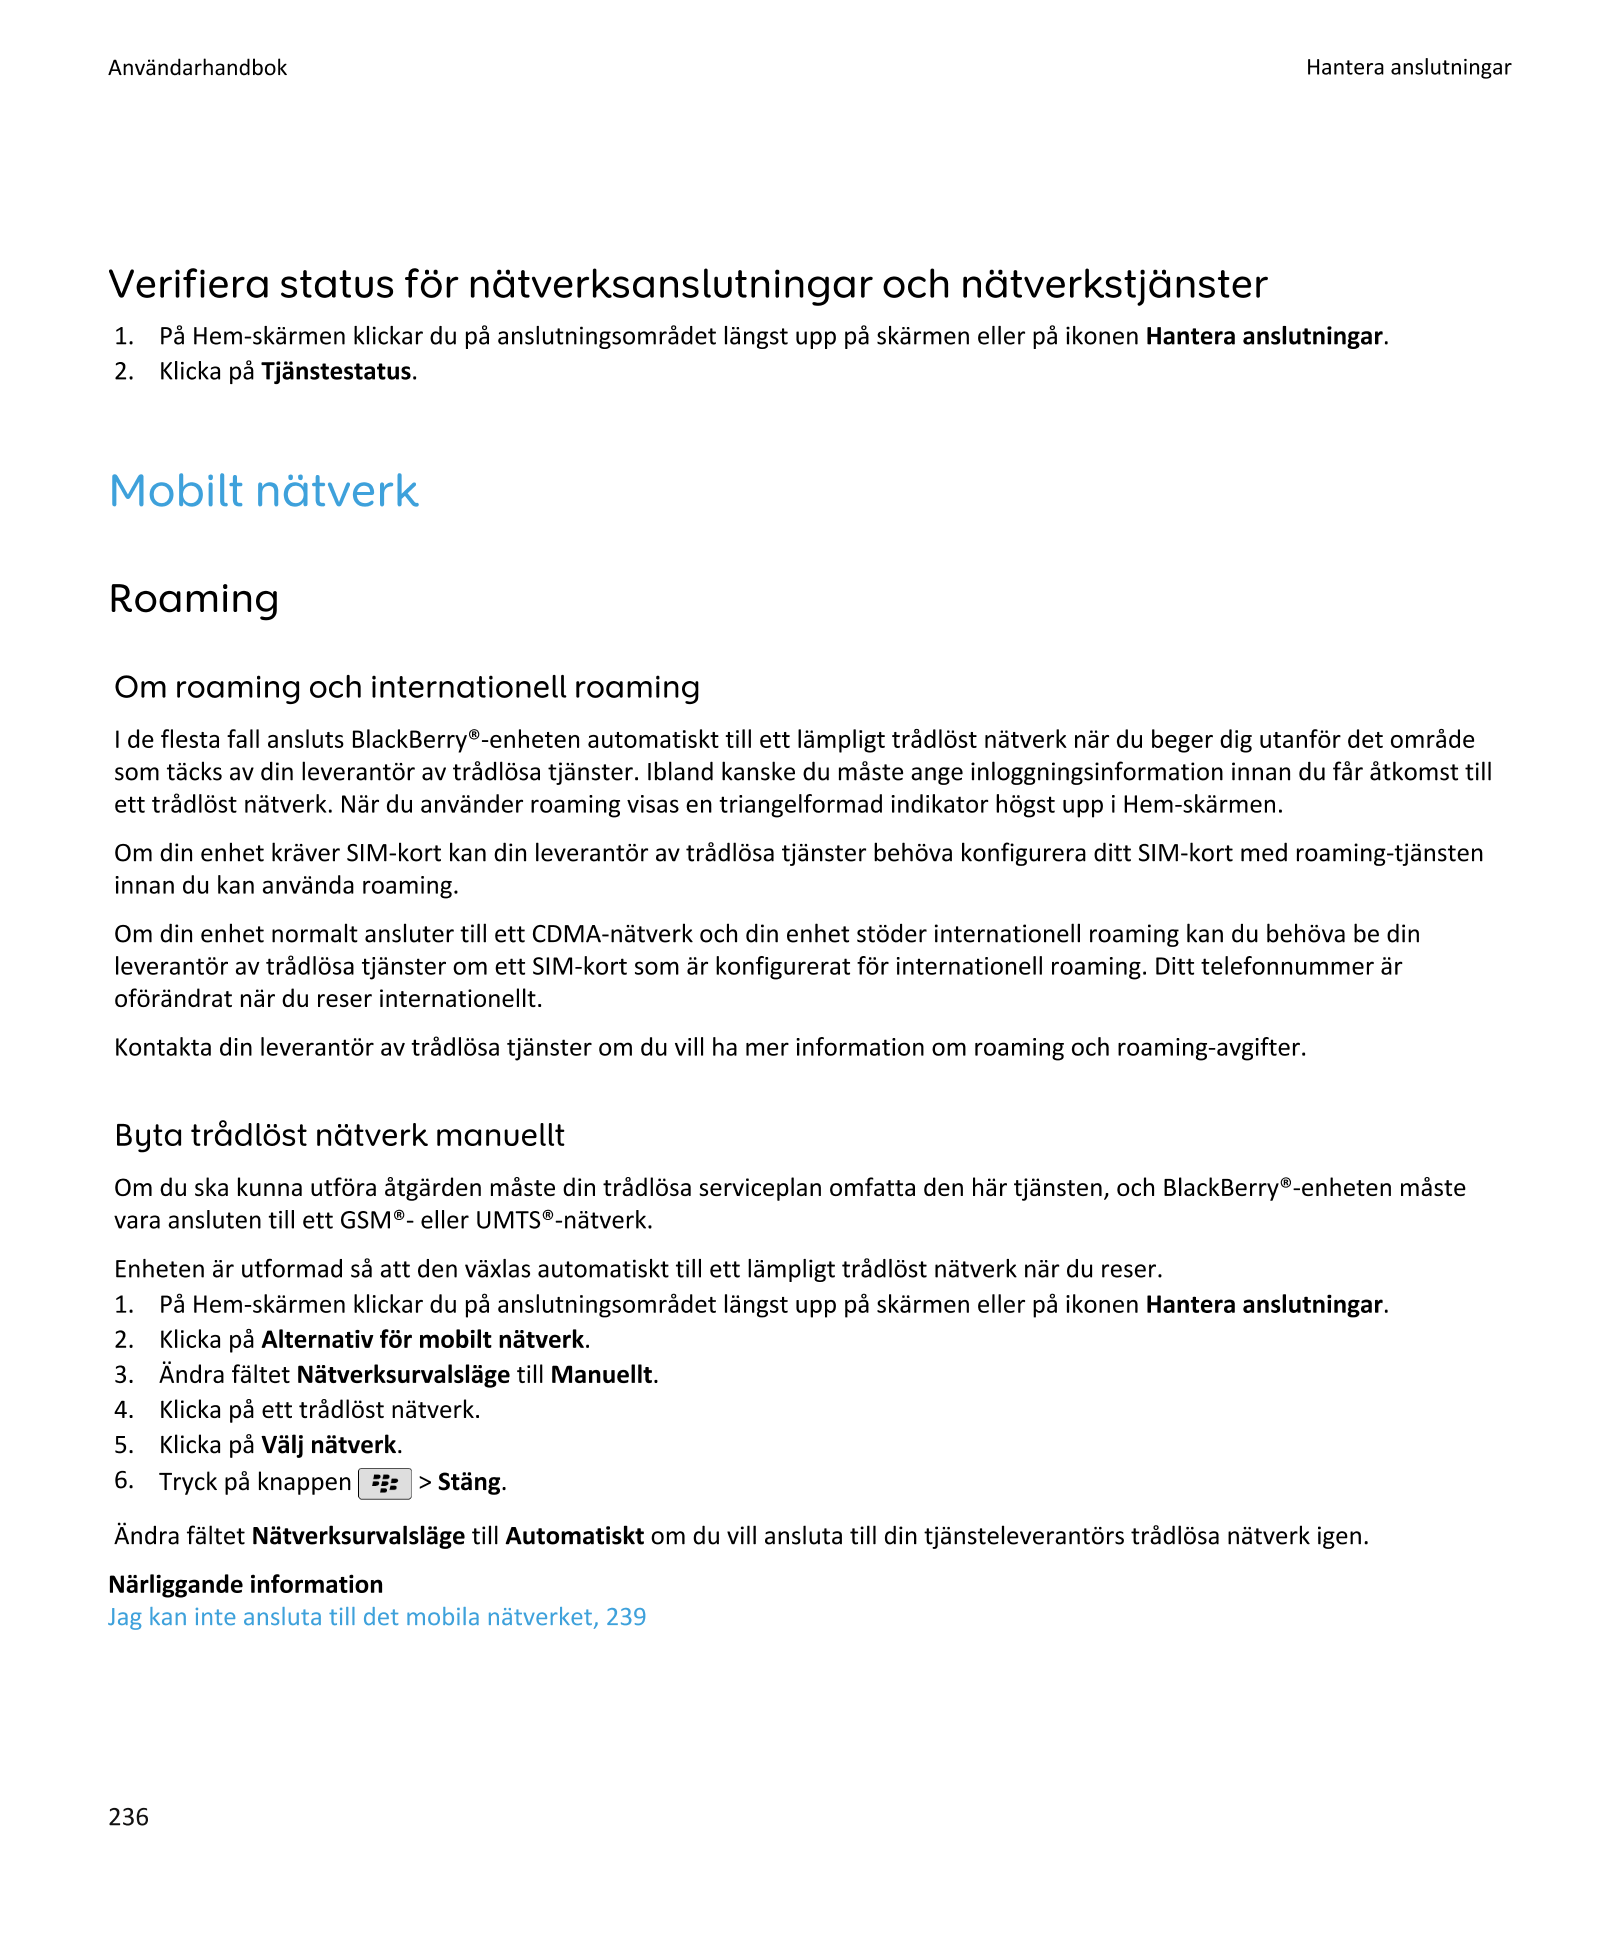 Användarhandbok Hantera anslutningar
Verifiera status för nätverksanslutningar och nätverkstjänster
1.    På Hem-skärmen klickar